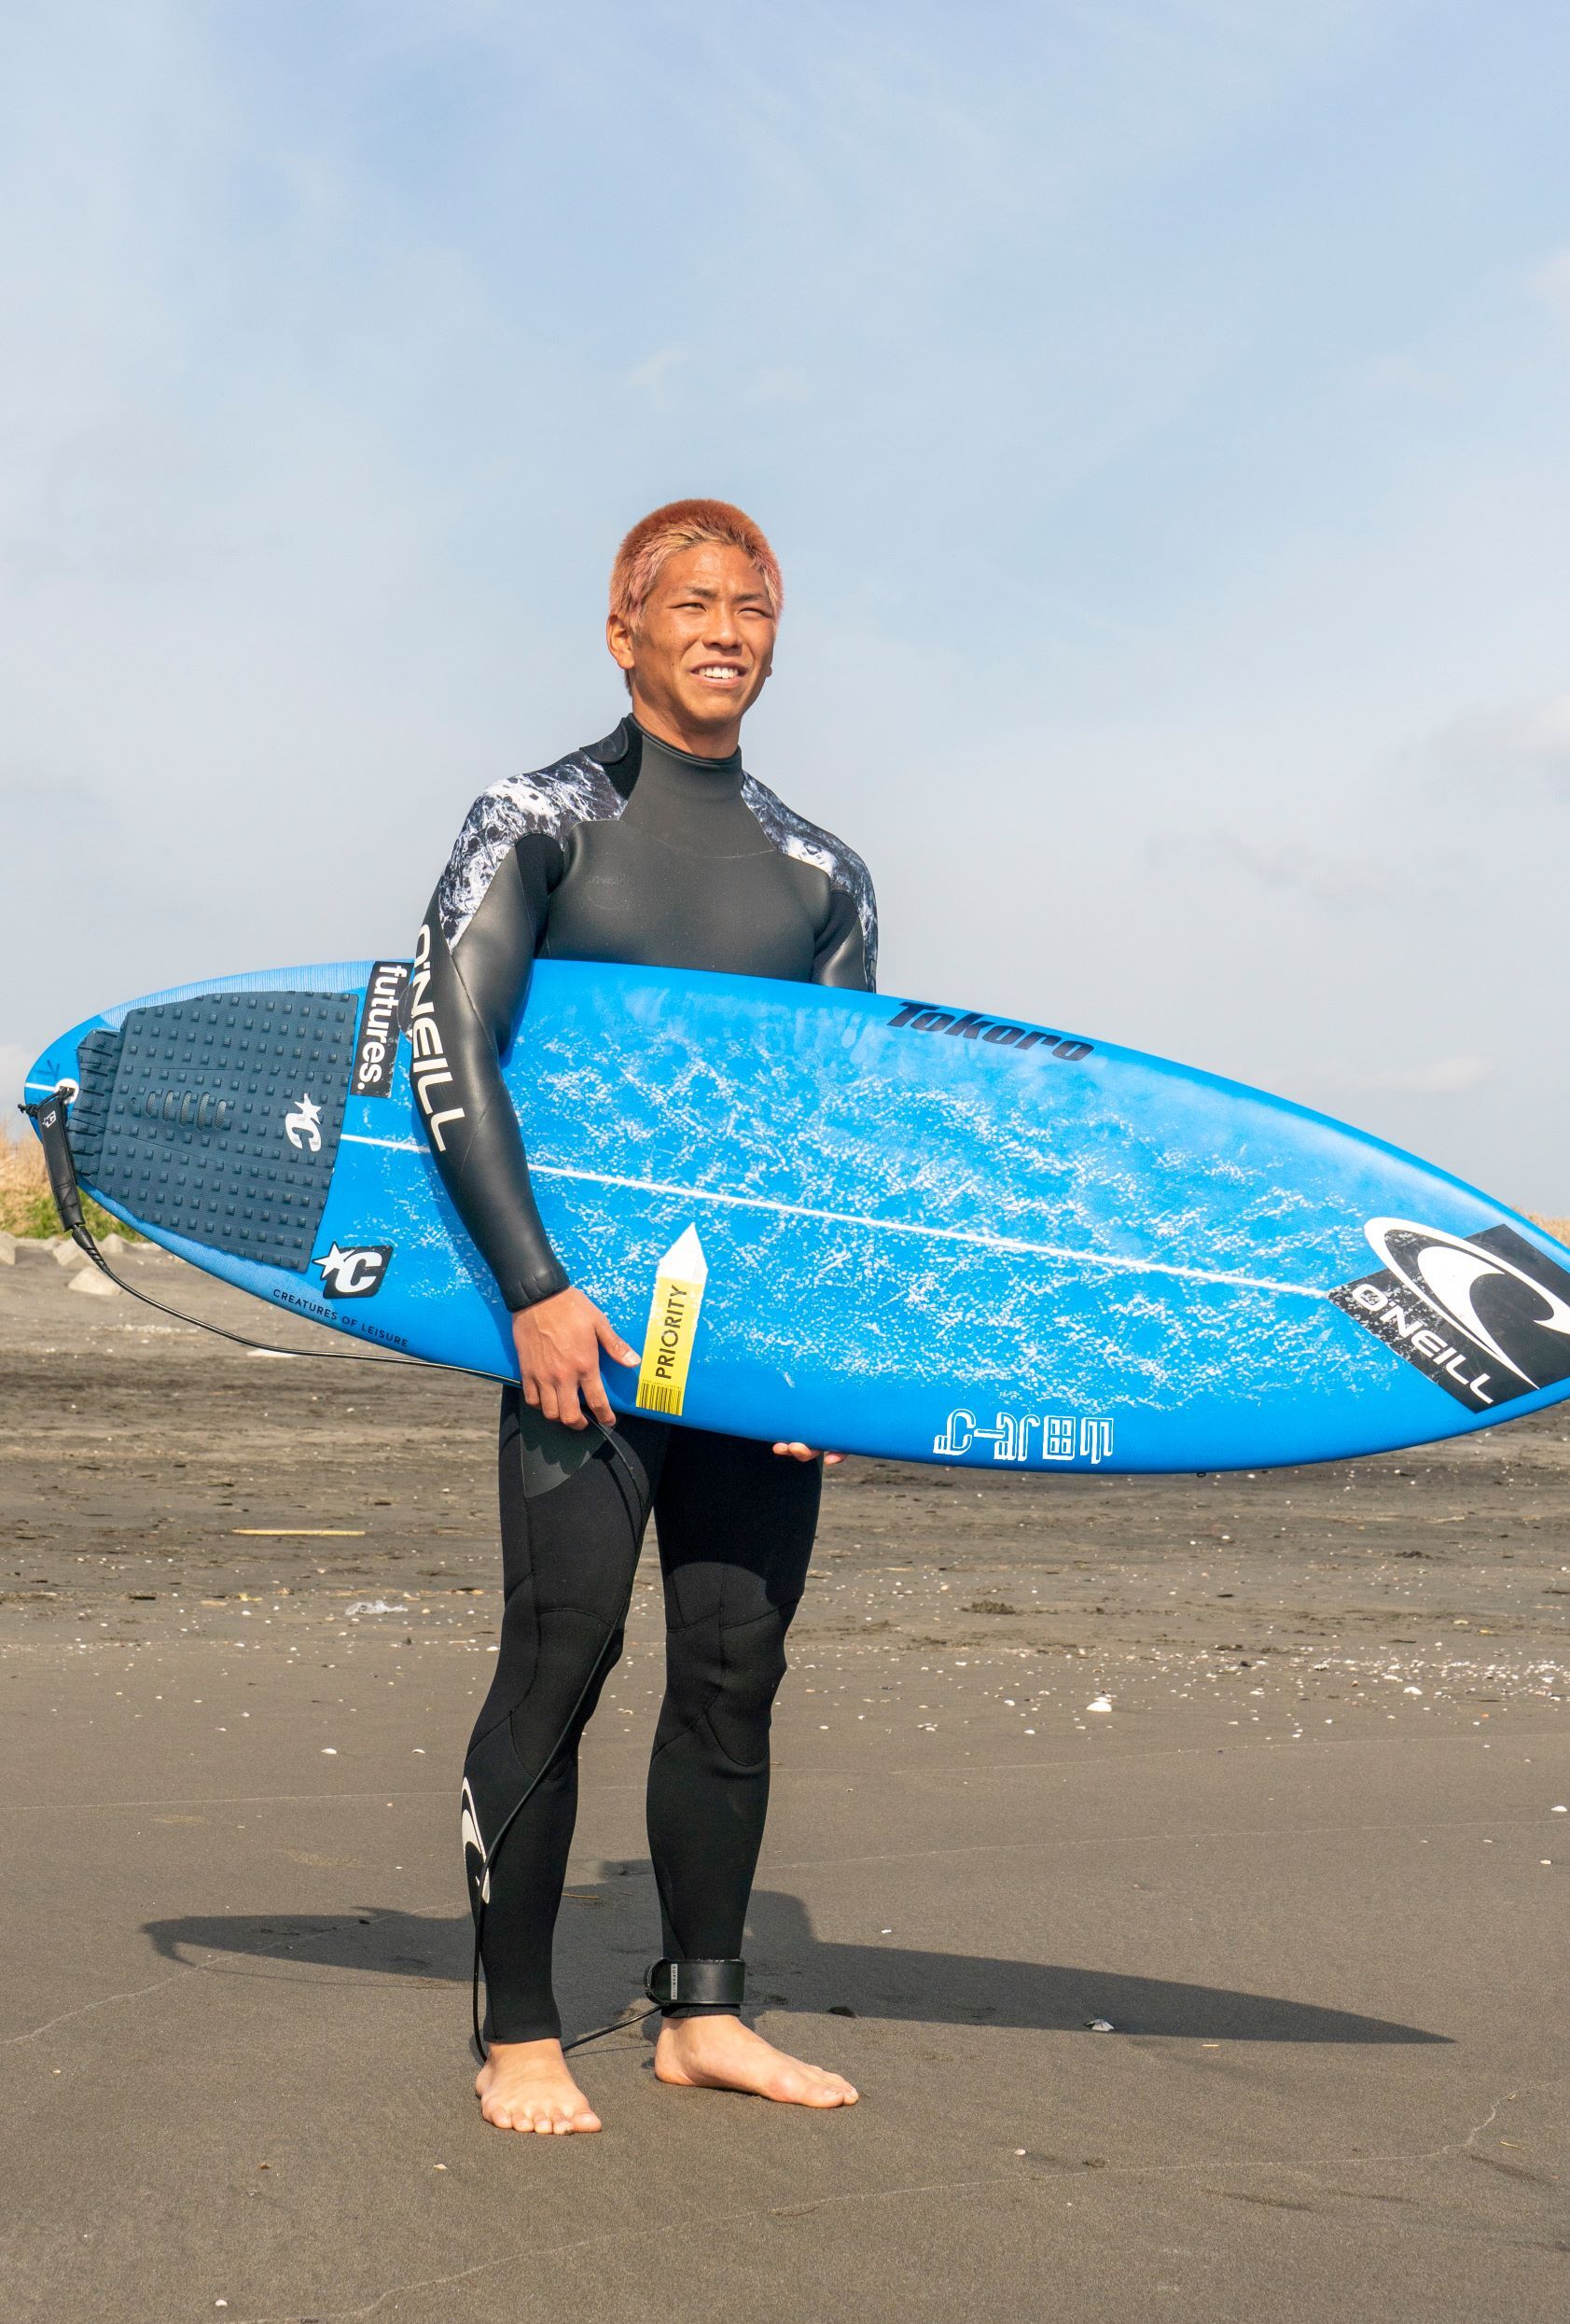 山田バーグ®は2021年 JPSA(日本プロサーフィン連盟)Grand Champion 西 慶司郎を応援しています‼